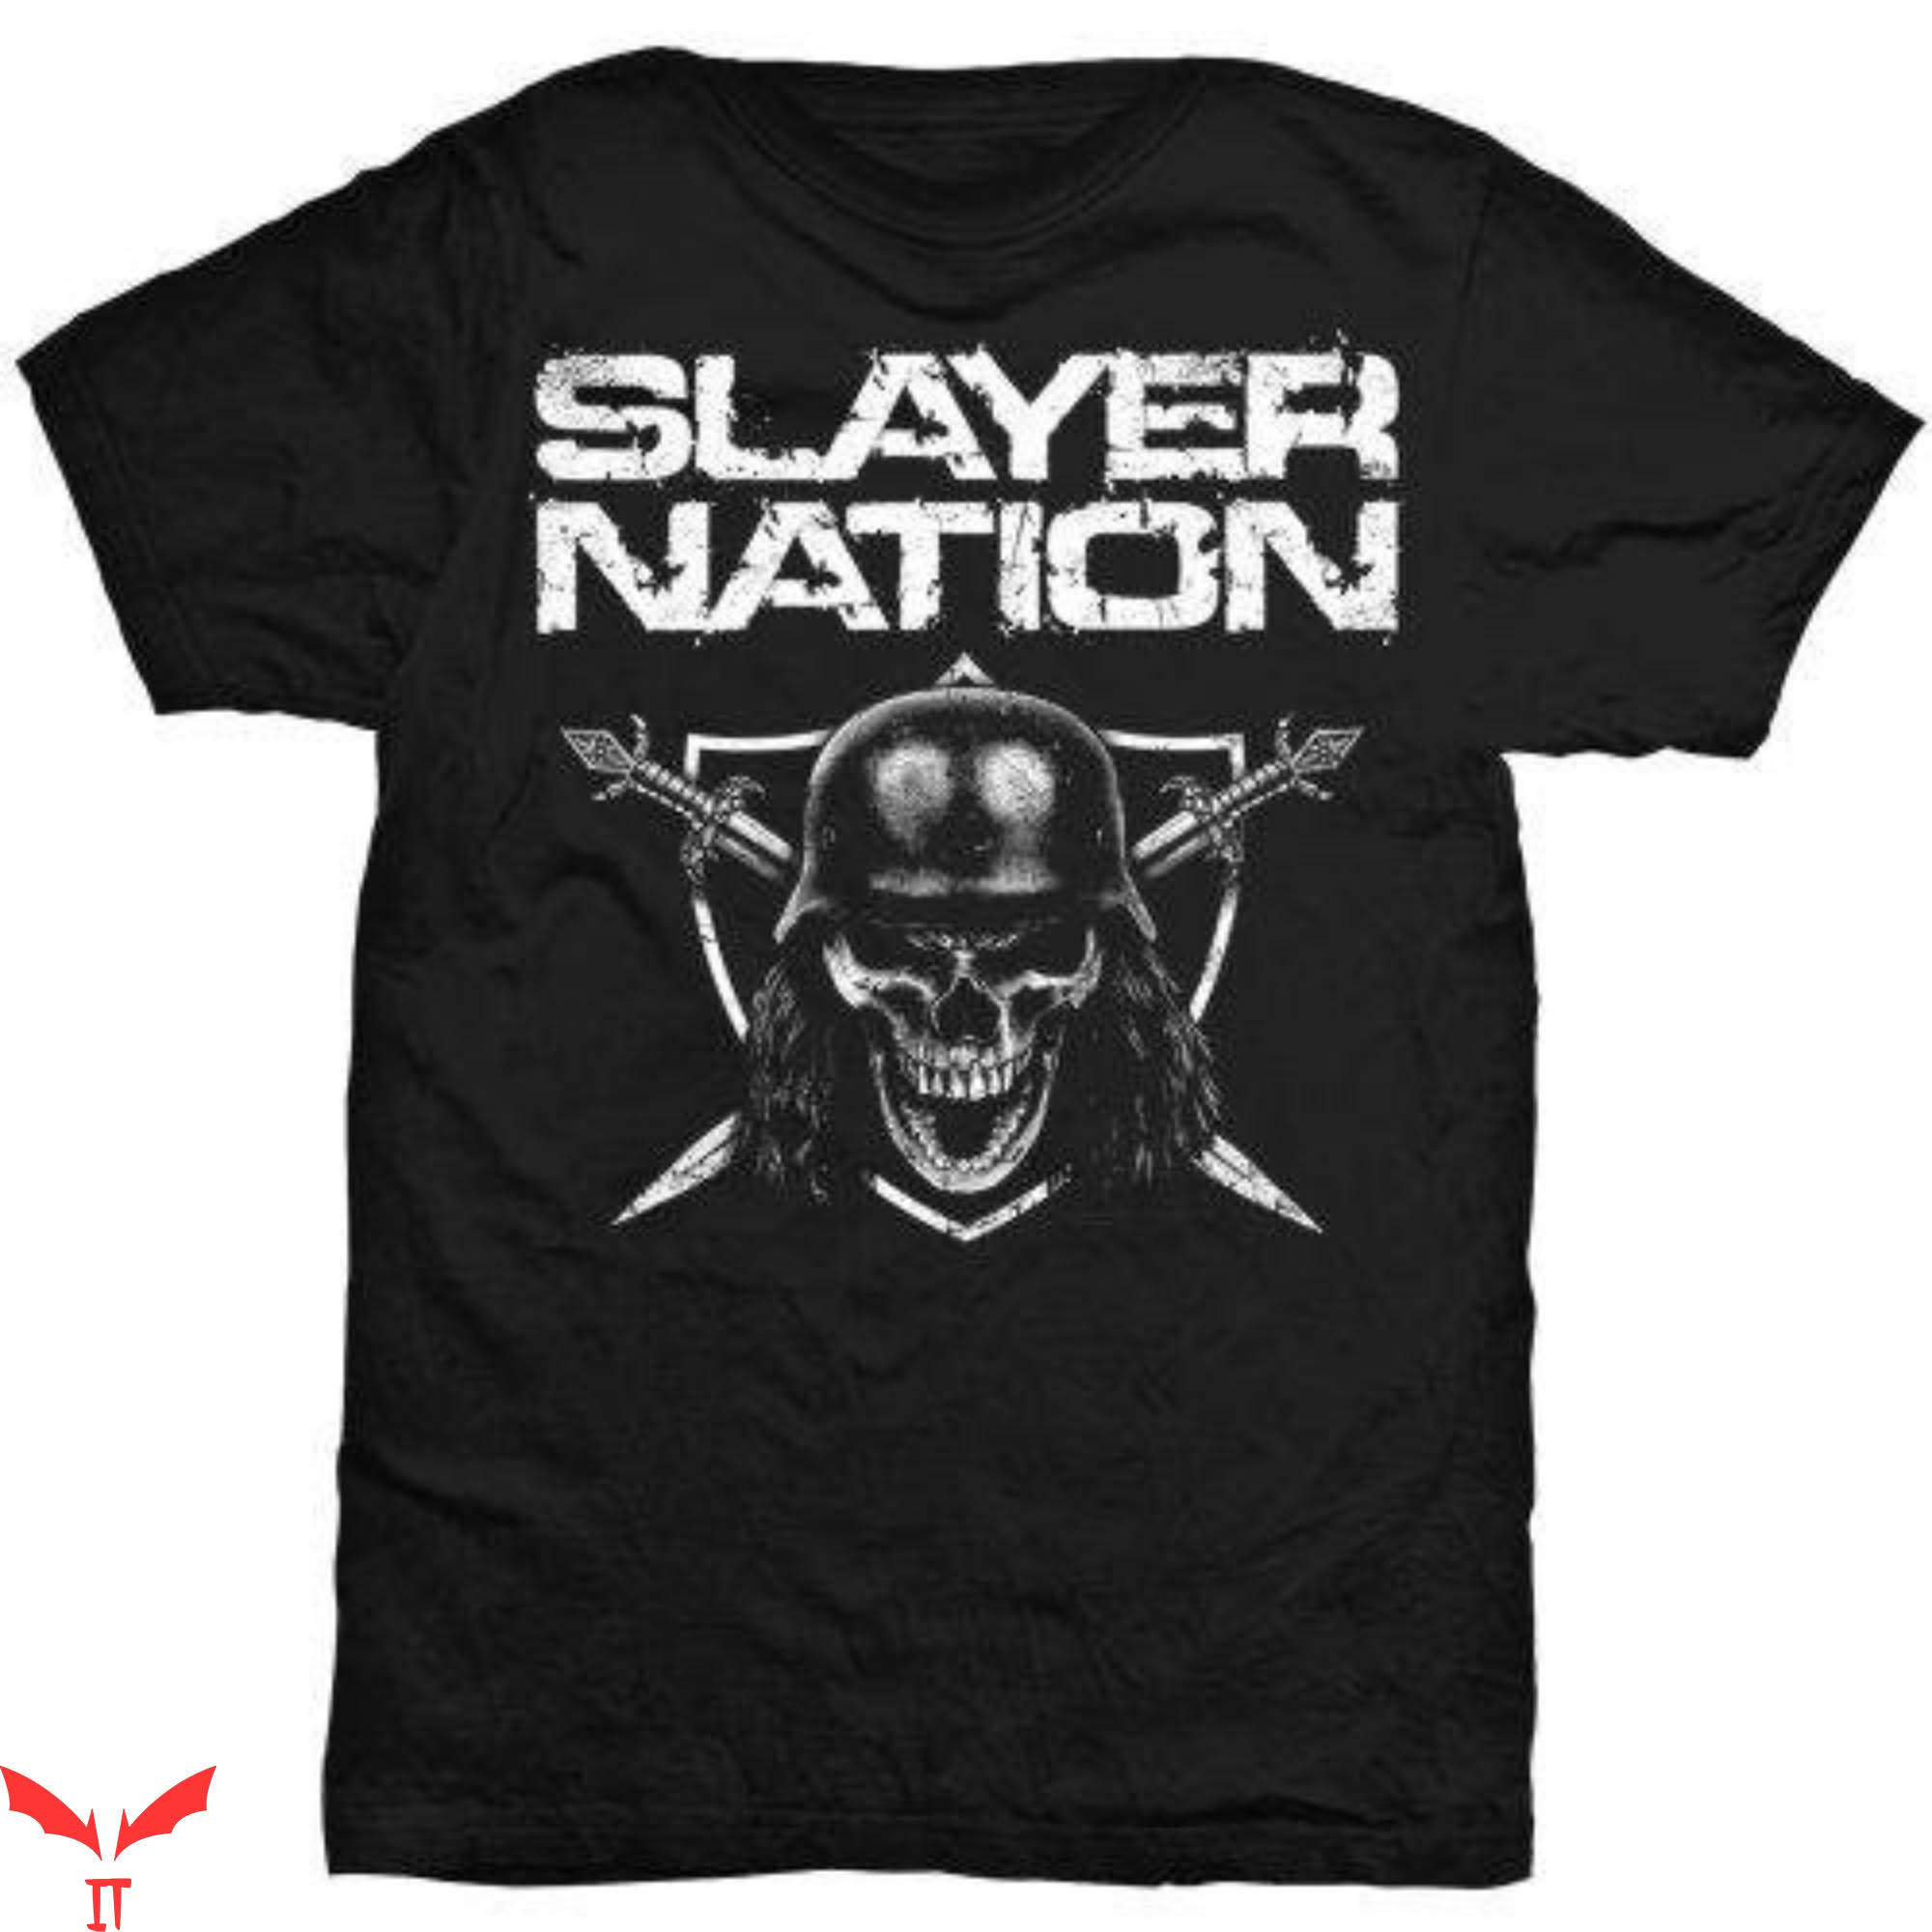 Vintage Slayer T-Shirt Slayer Nation Metal Style Tee Shirt